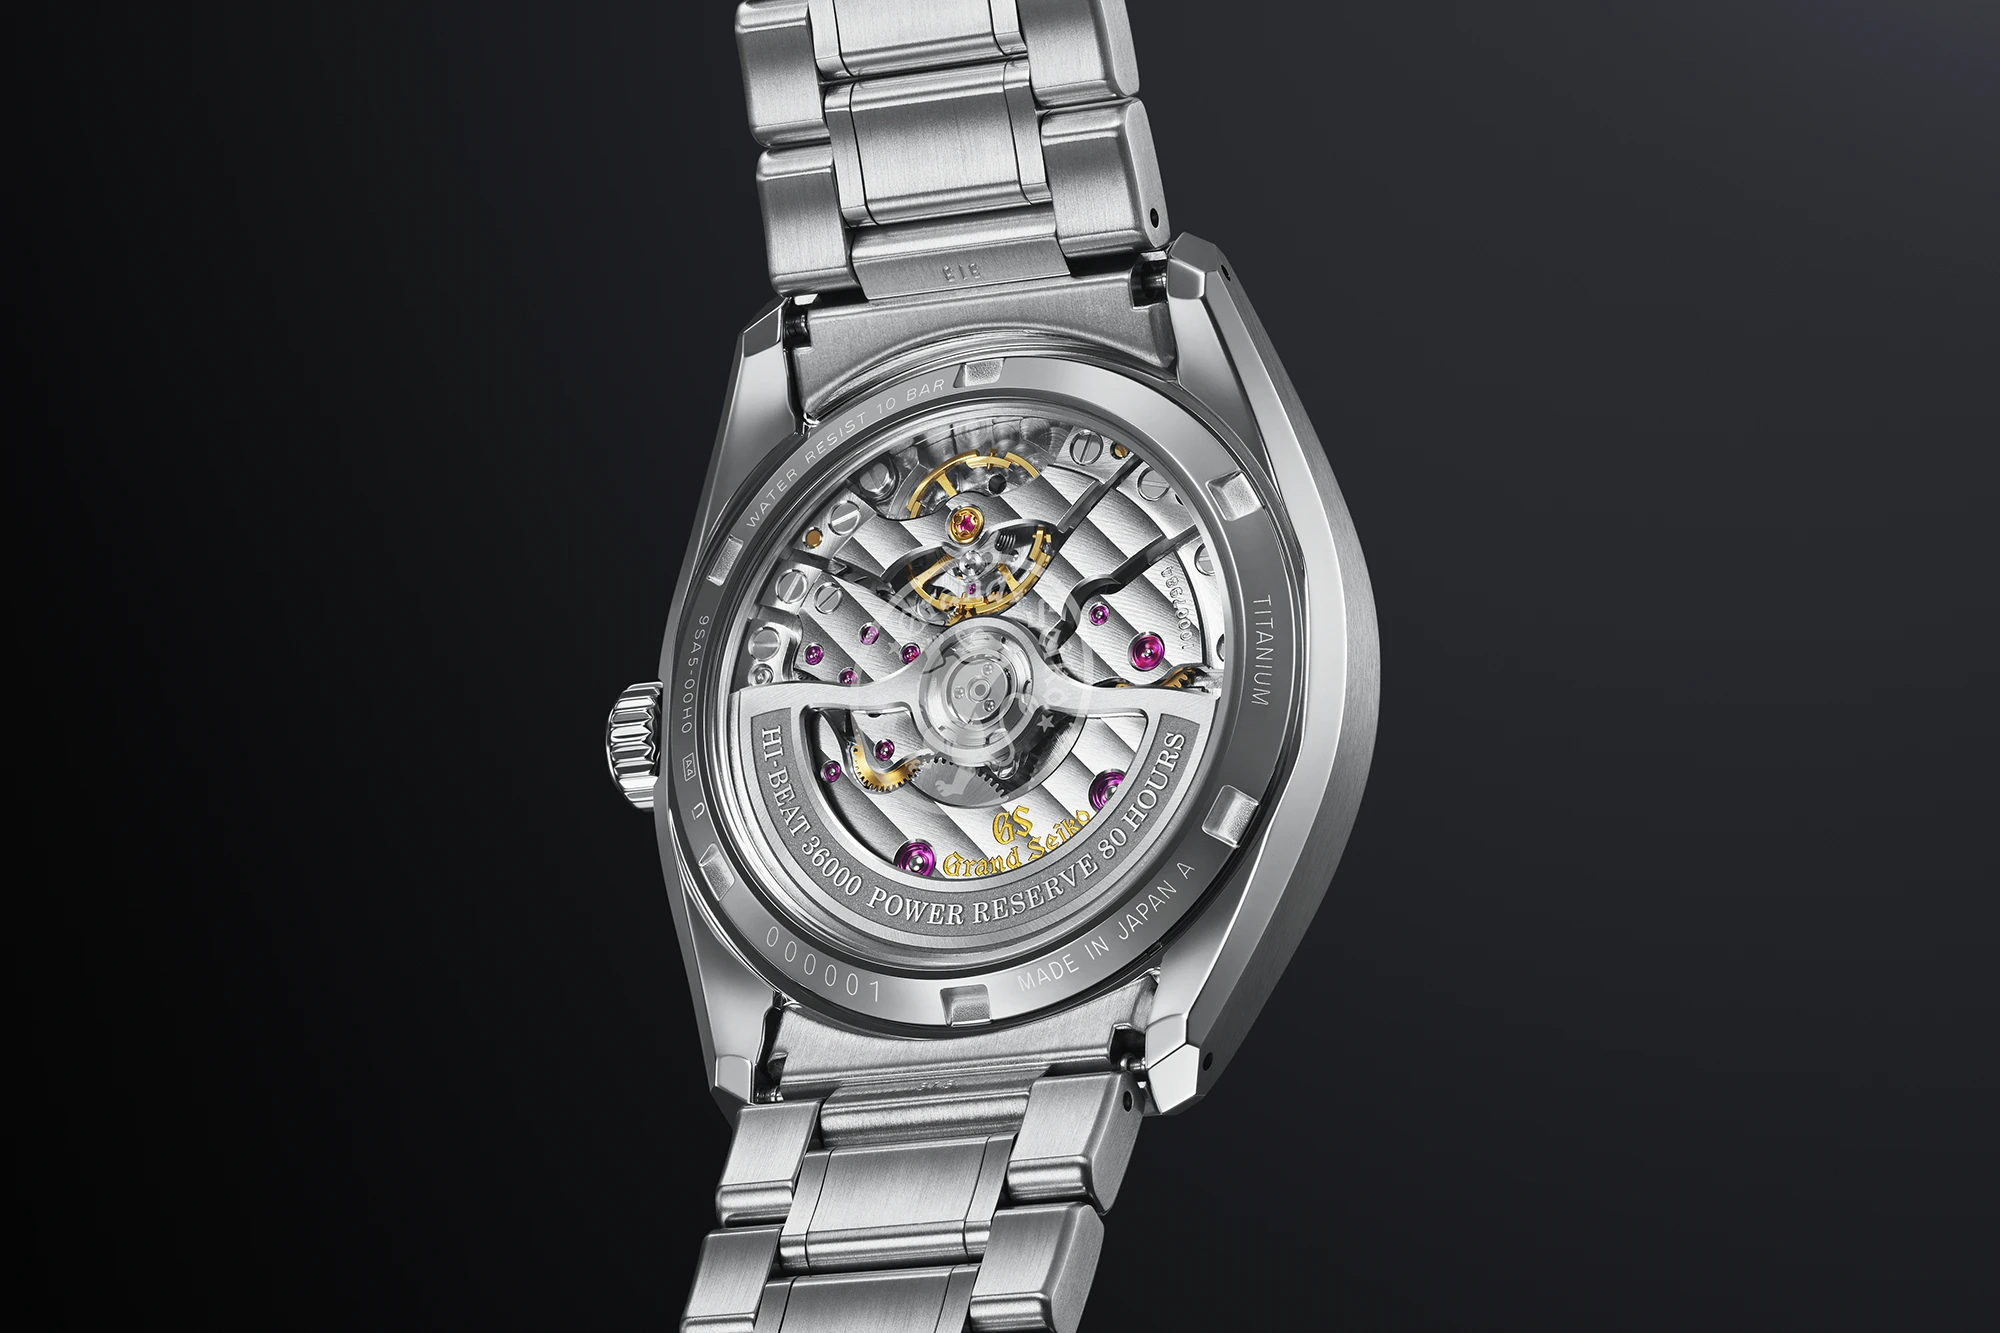 Grand Seiko SLGH013 Evolution 9 watch with 9SA5 caliber.